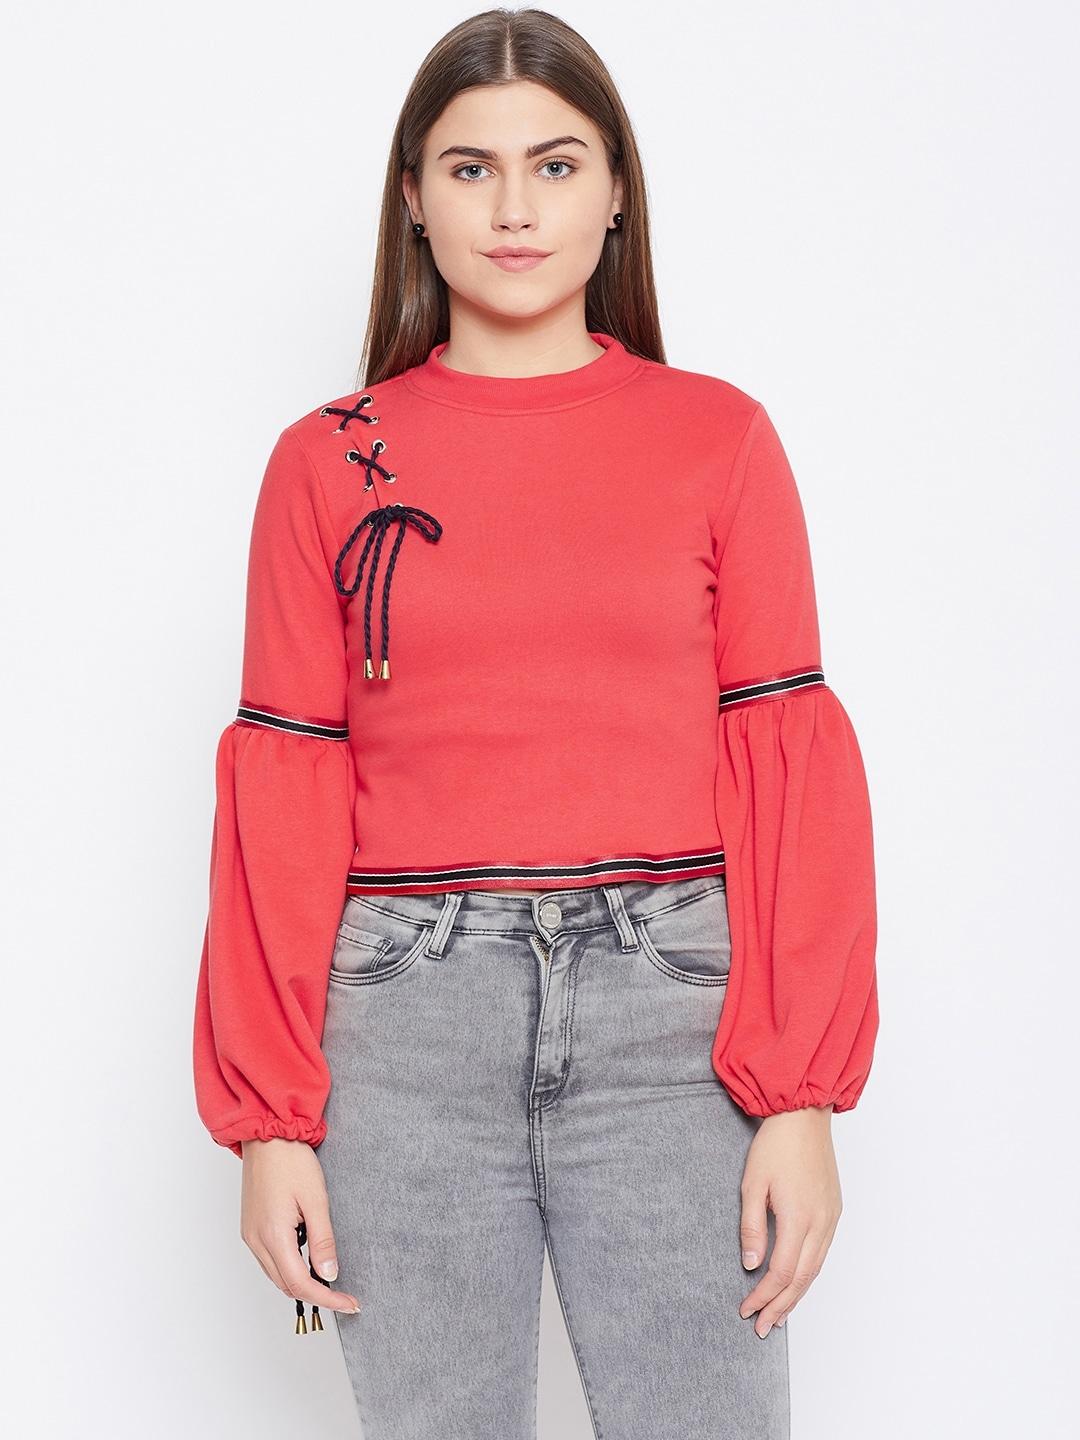 alsace lorraine paris women red solid crop sweatshirt